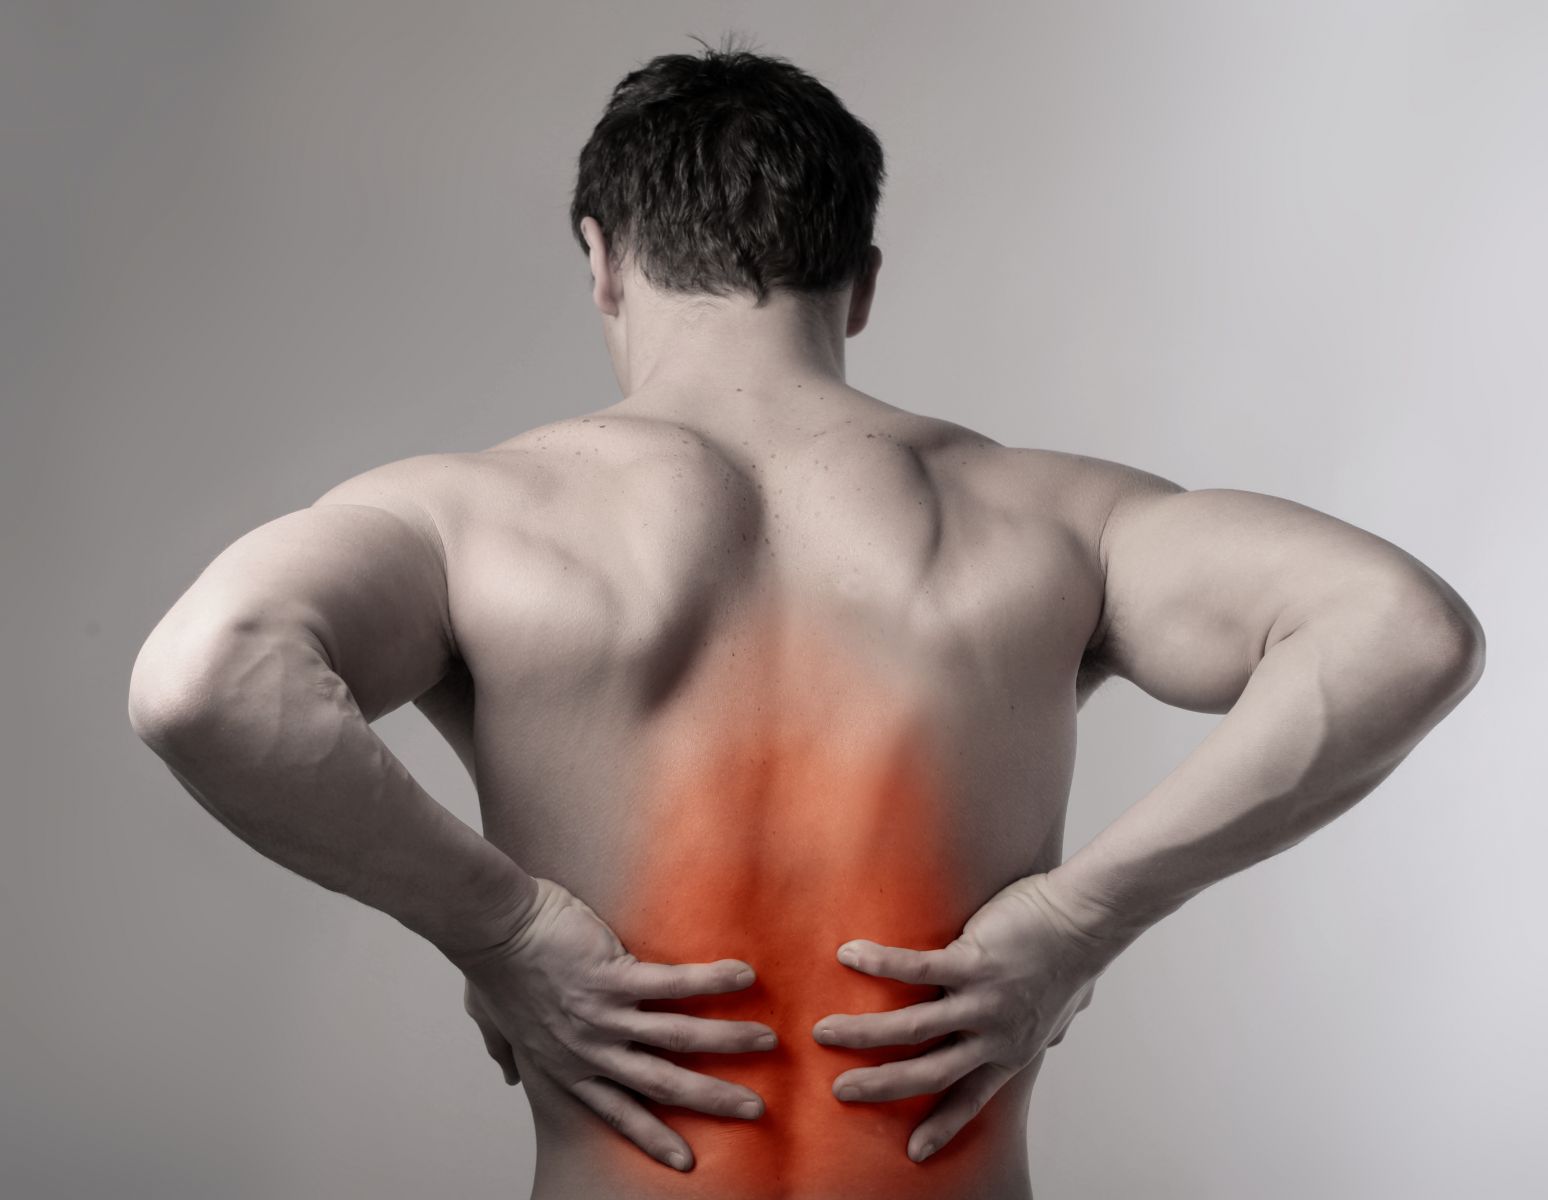 Боль в спине - симптом заболеваний, чаще всего, мышц спины и позвоночника. Мы готовы разобраться почему болит спина.